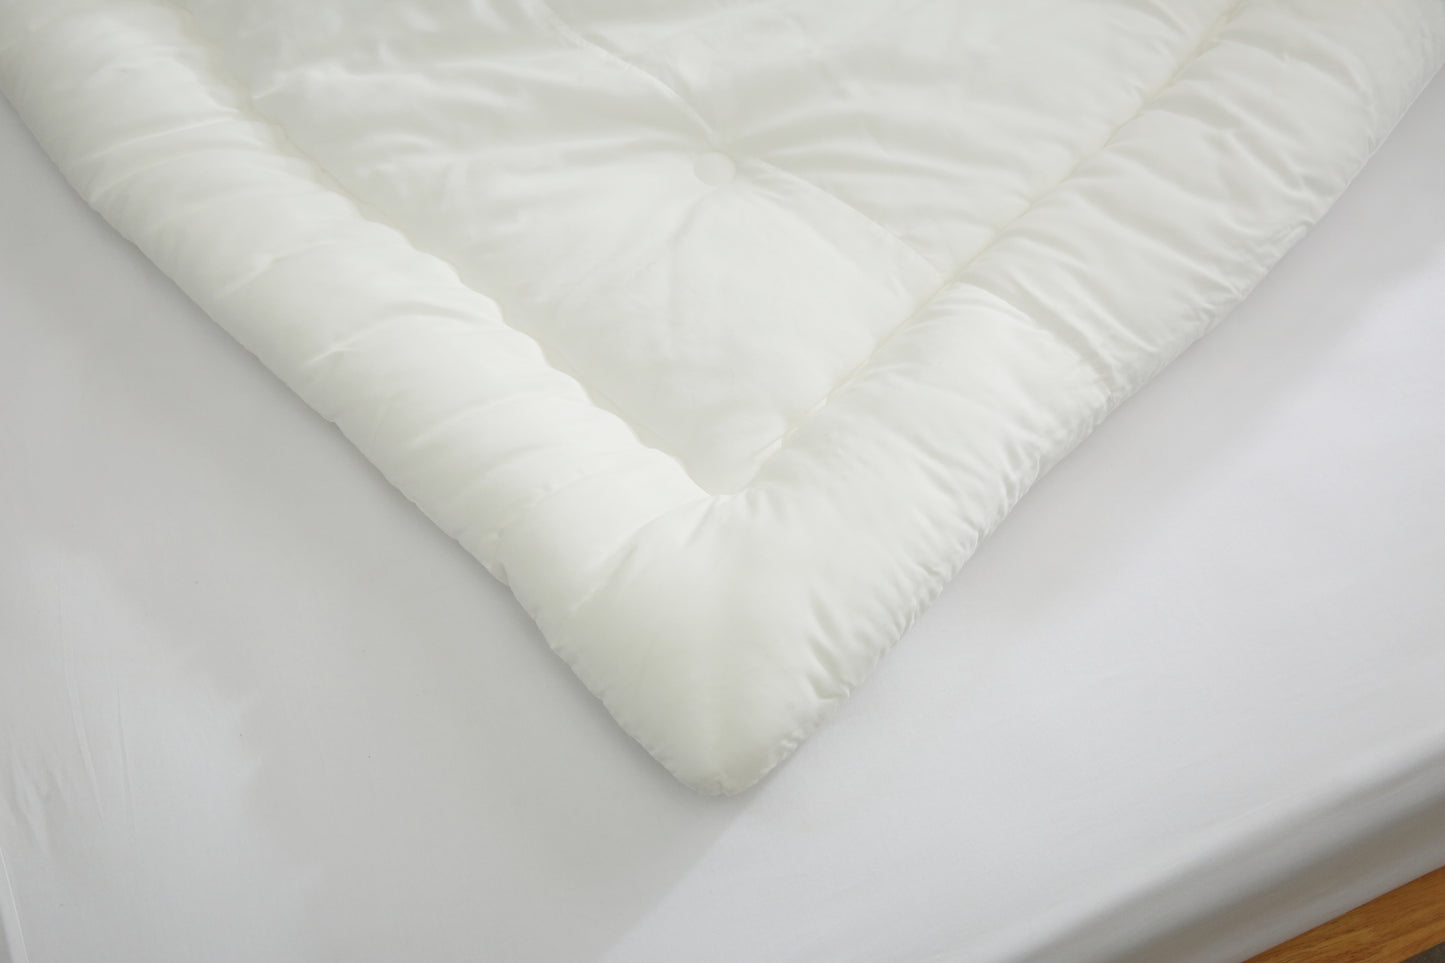 [NEW] Premium 100% Tencel Modal Comforter Set - Double/Queen